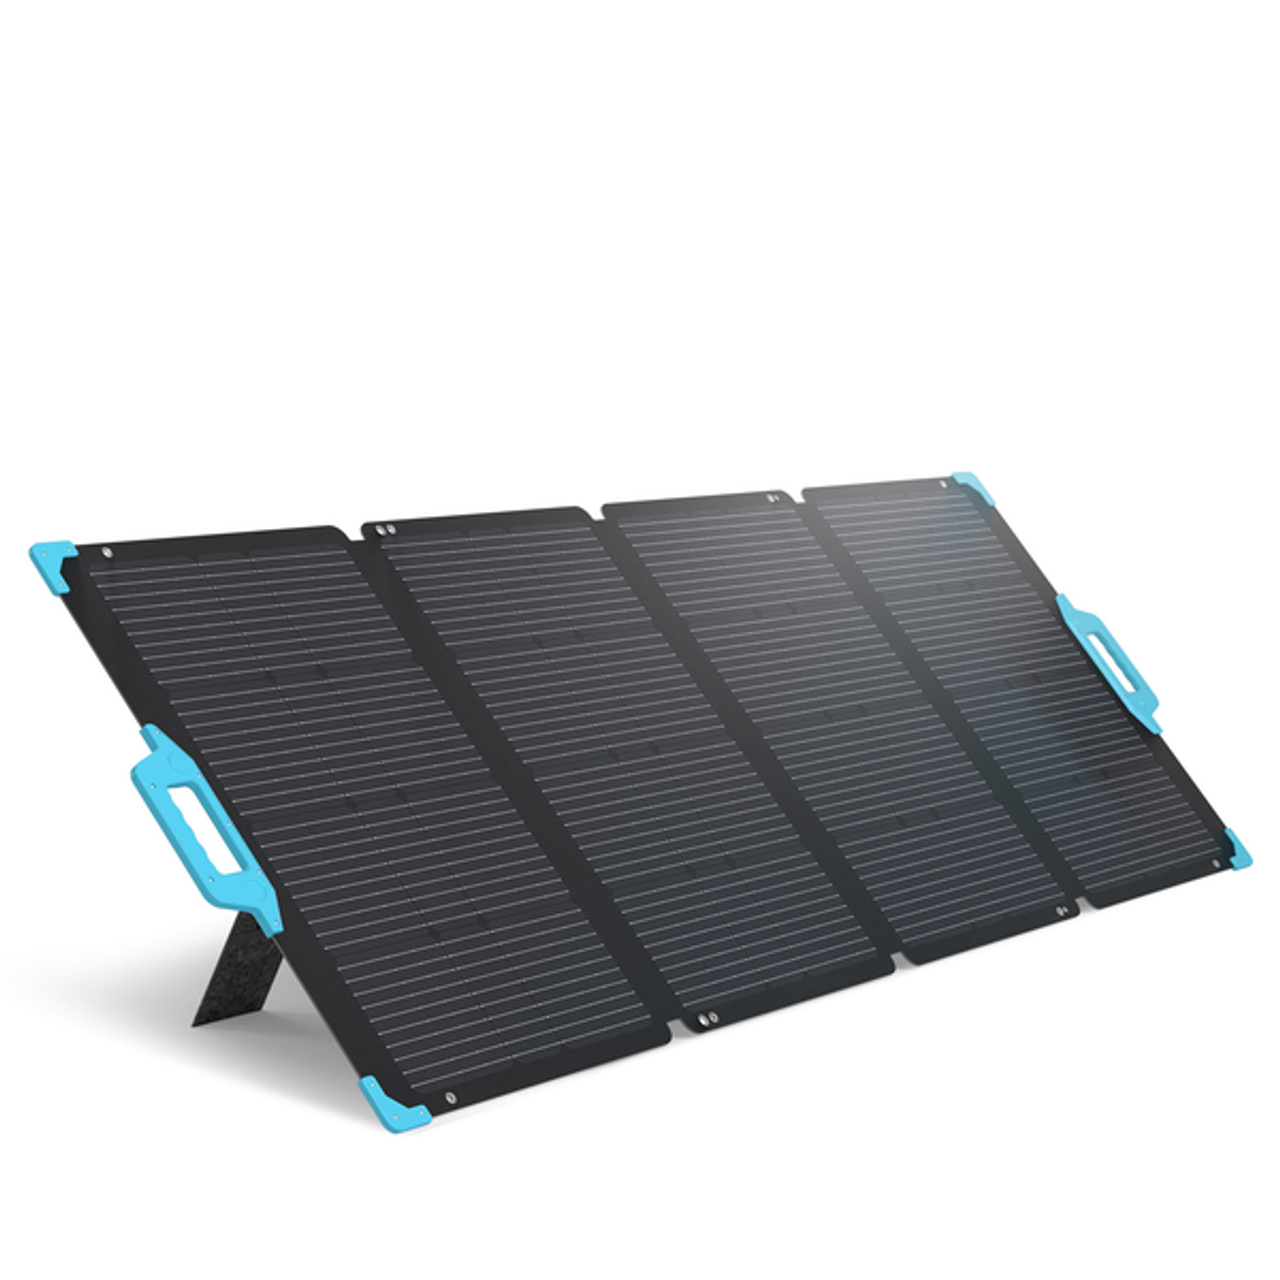 Rodeado deberes implicar E.FLEX 220 Portable Solar Panel